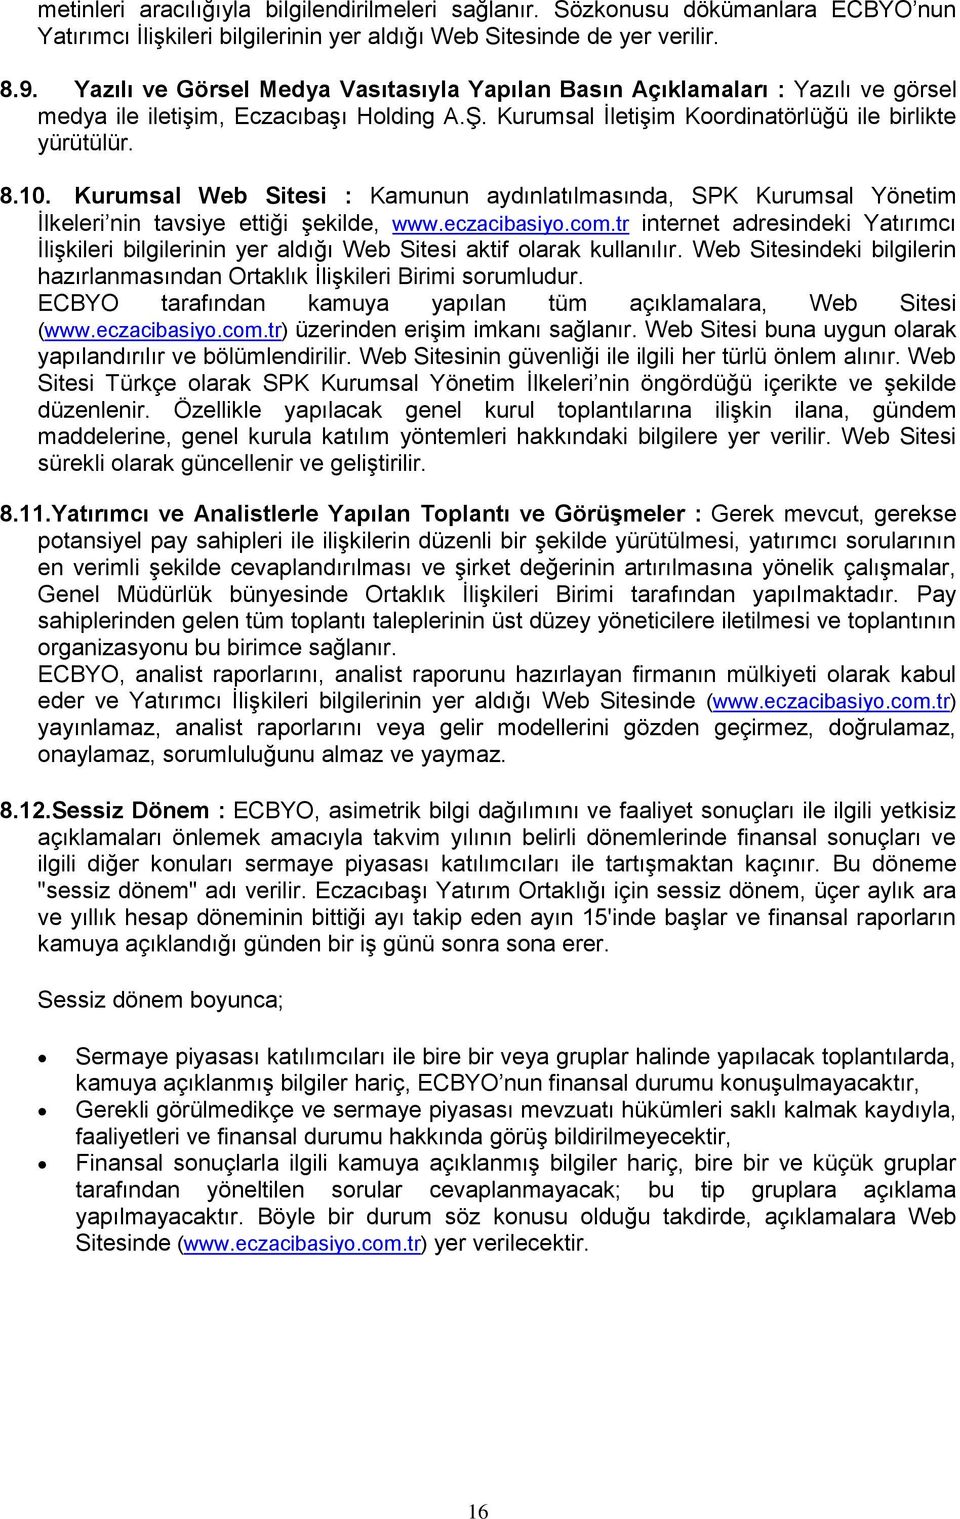 Kurumsal Web Sitesi : Kamunun aydınlatılmasında, SPK Kurumsal Yönetim İlkeleri nin tavsiye ettiği şekilde, www.eczacibasiyo.com.